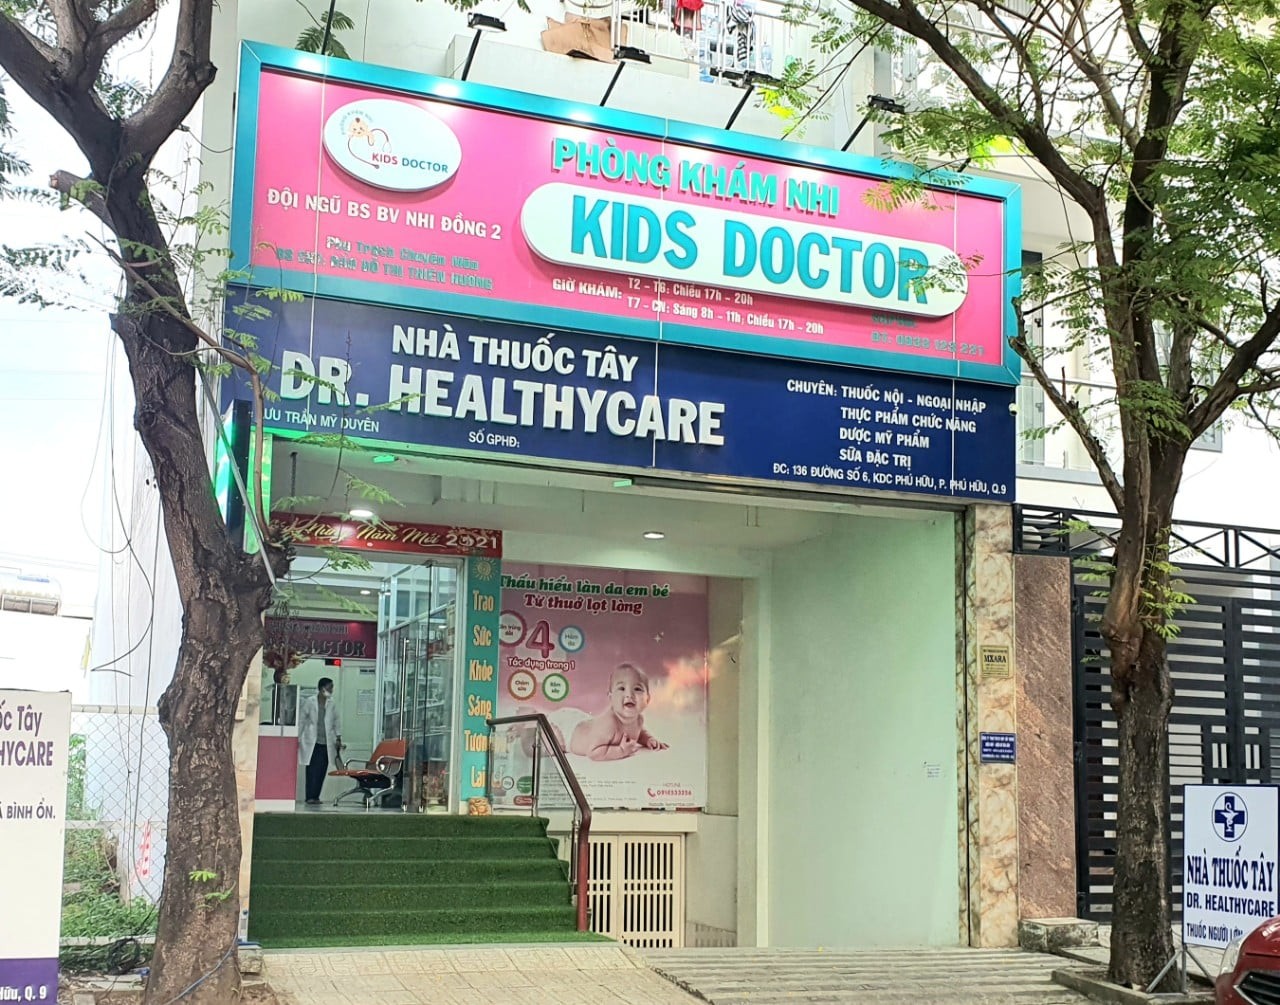 Phòng khám Kids Doctor là phòng khám có đội ngũ bác sĩ nhi giỏi, giàu kinh nghiệm